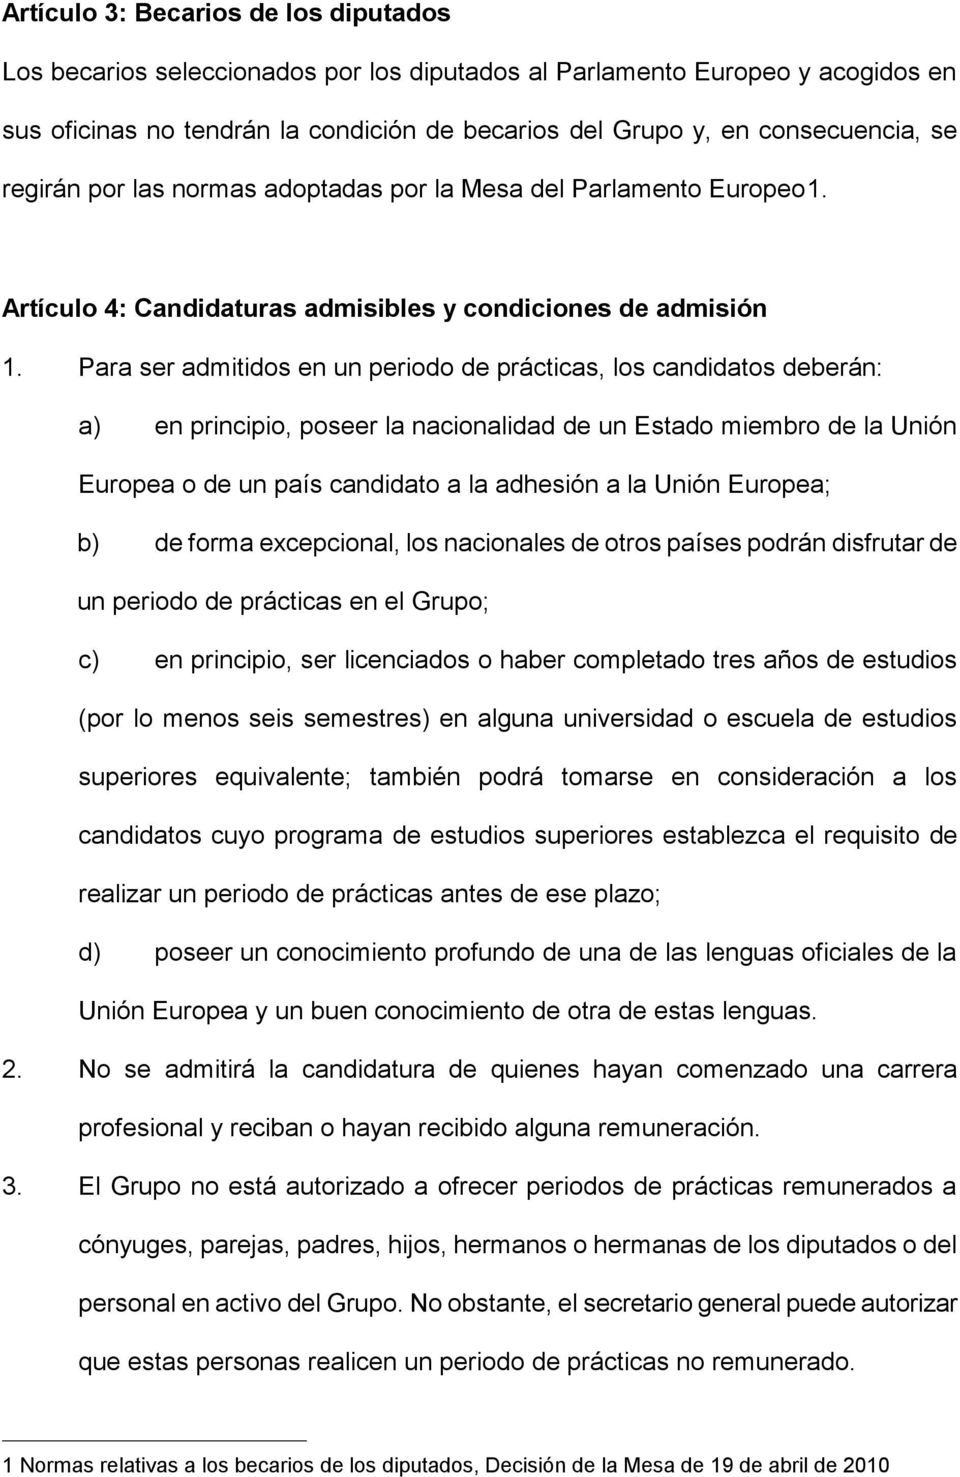 Para ser admitidos en un periodo de prácticas, los candidatos deberán: a) en principio, poseer la nacionalidad de un Estado miembro de la Unión Europea o de un país candidato a la adhesión a la Unión